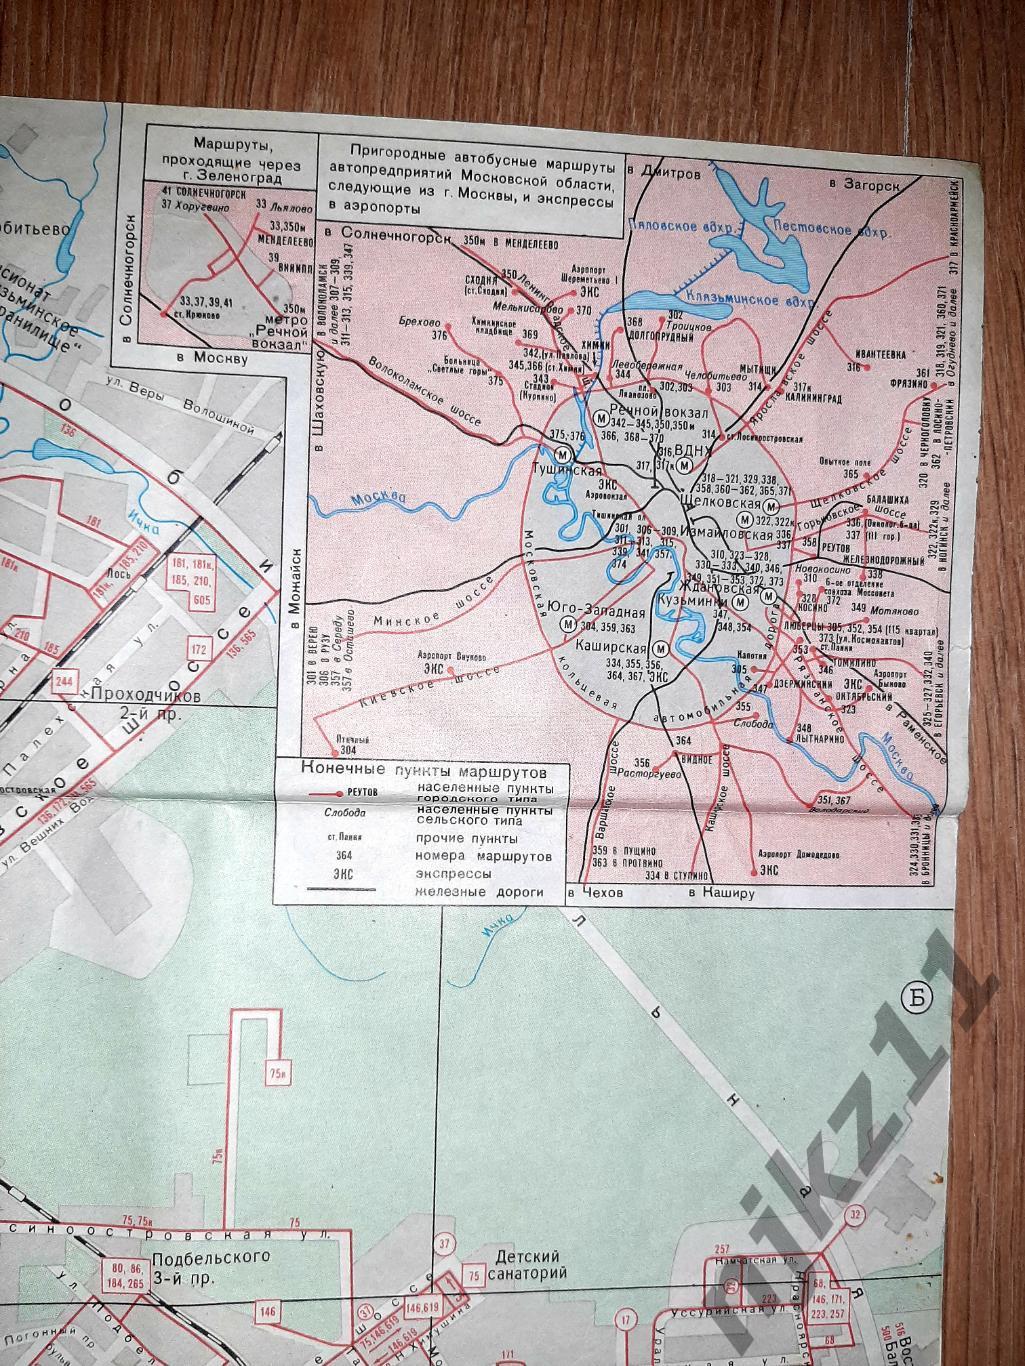 Карта Москва 1980+Зеленоград+схема движения пассажирского транспорта 79-80г.г. 2